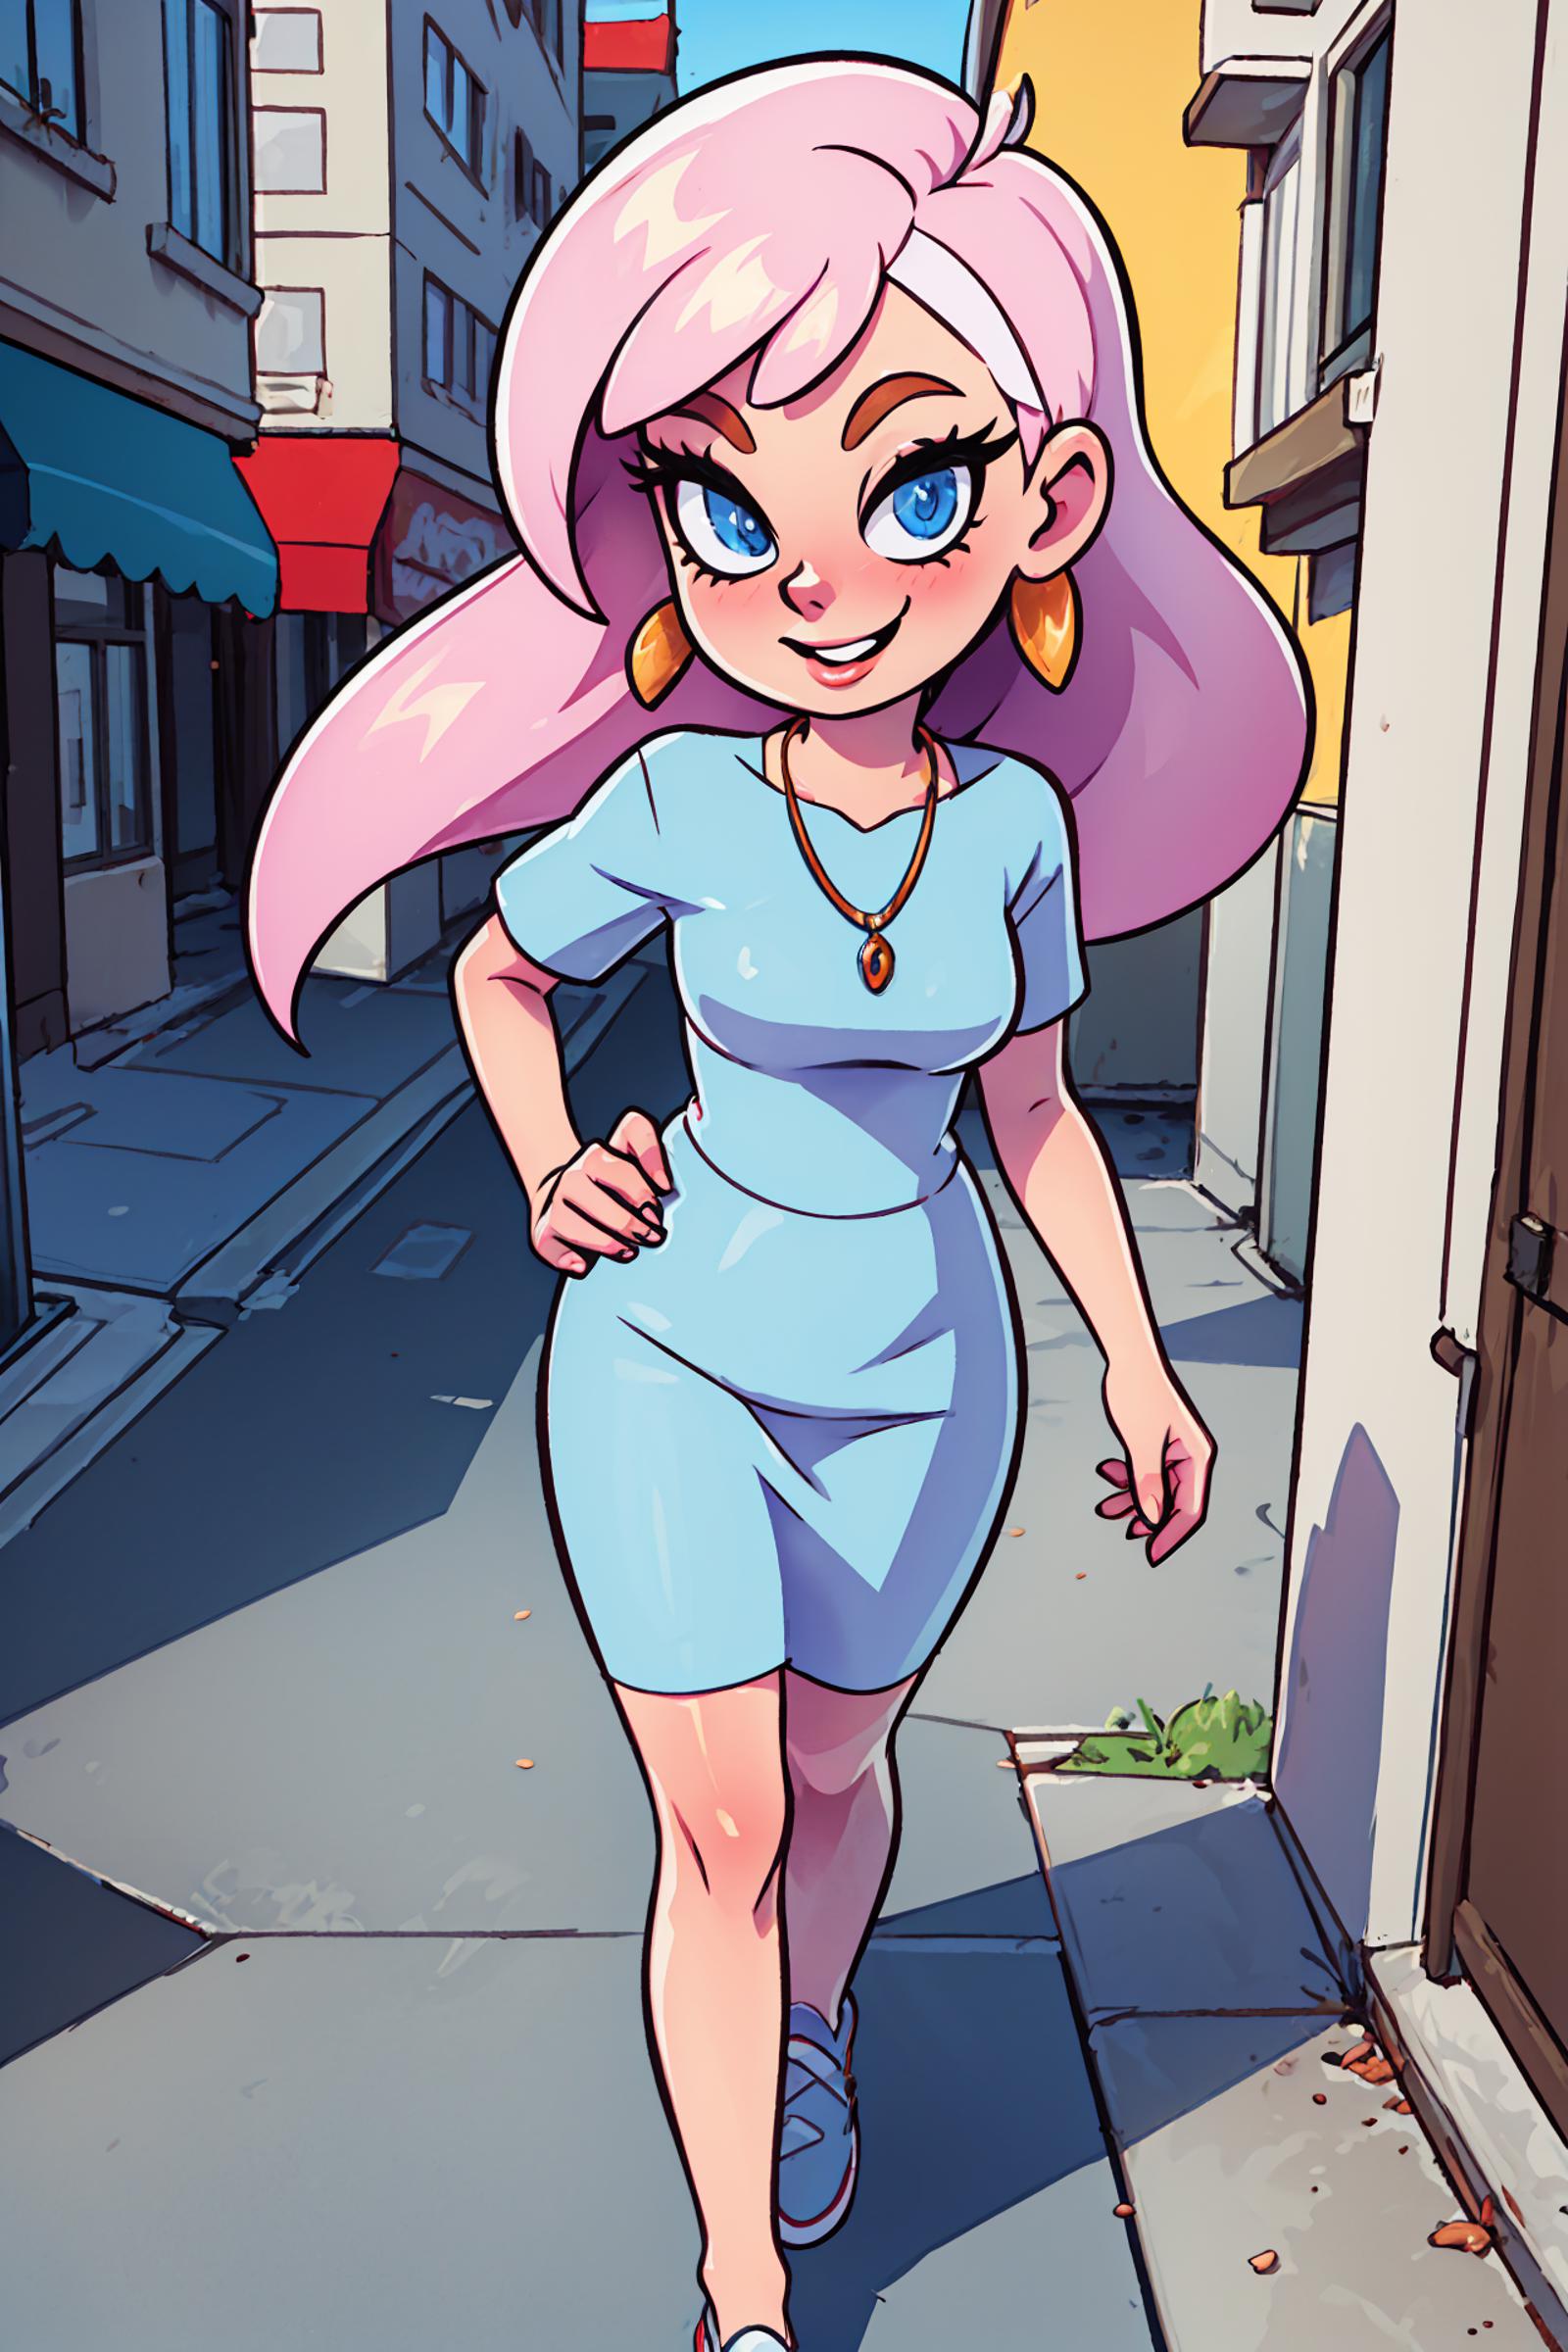 A cartoon girl wearing a blue dress and pink hair walks down a street.